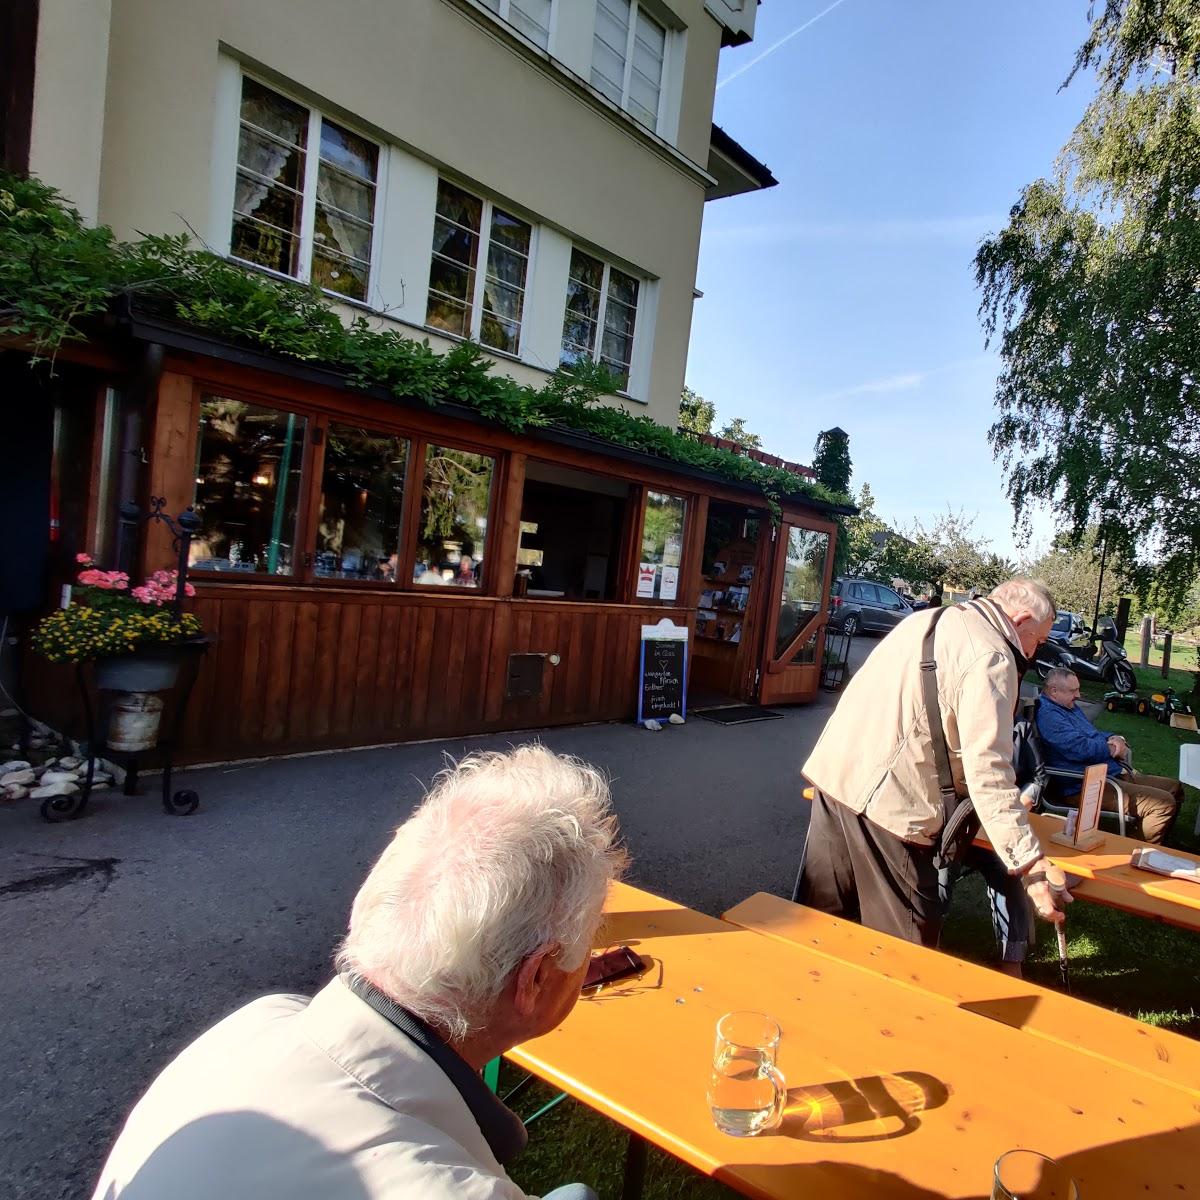 Restaurant "Bauernhof Woltron" in Würflach